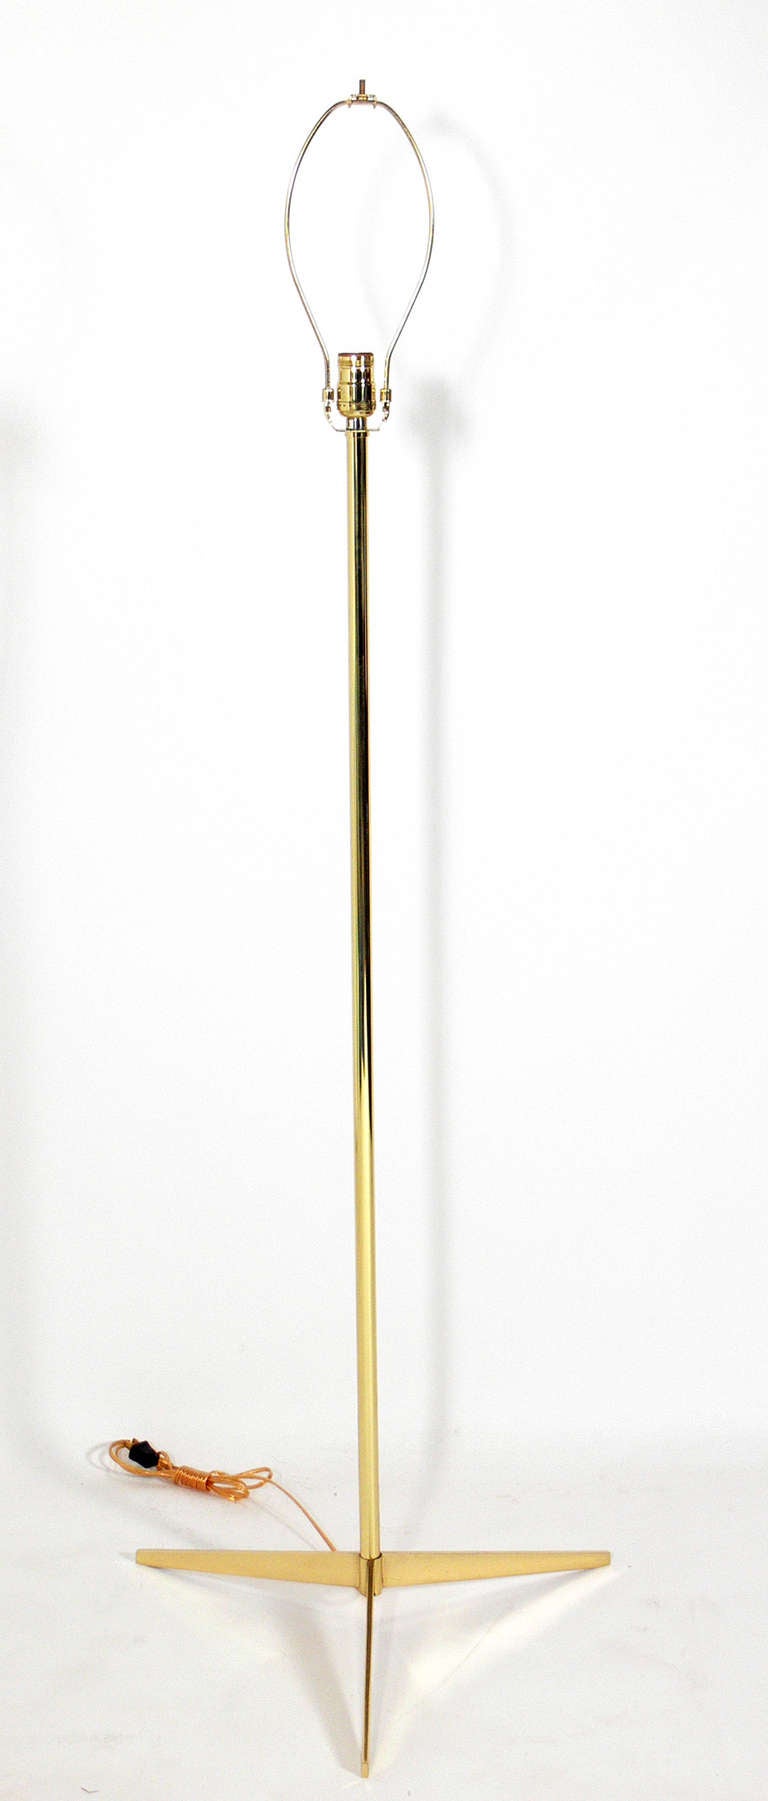 American Sculptural Floor Lamp in Brass or Nickel in the Manner of Paul McCobb